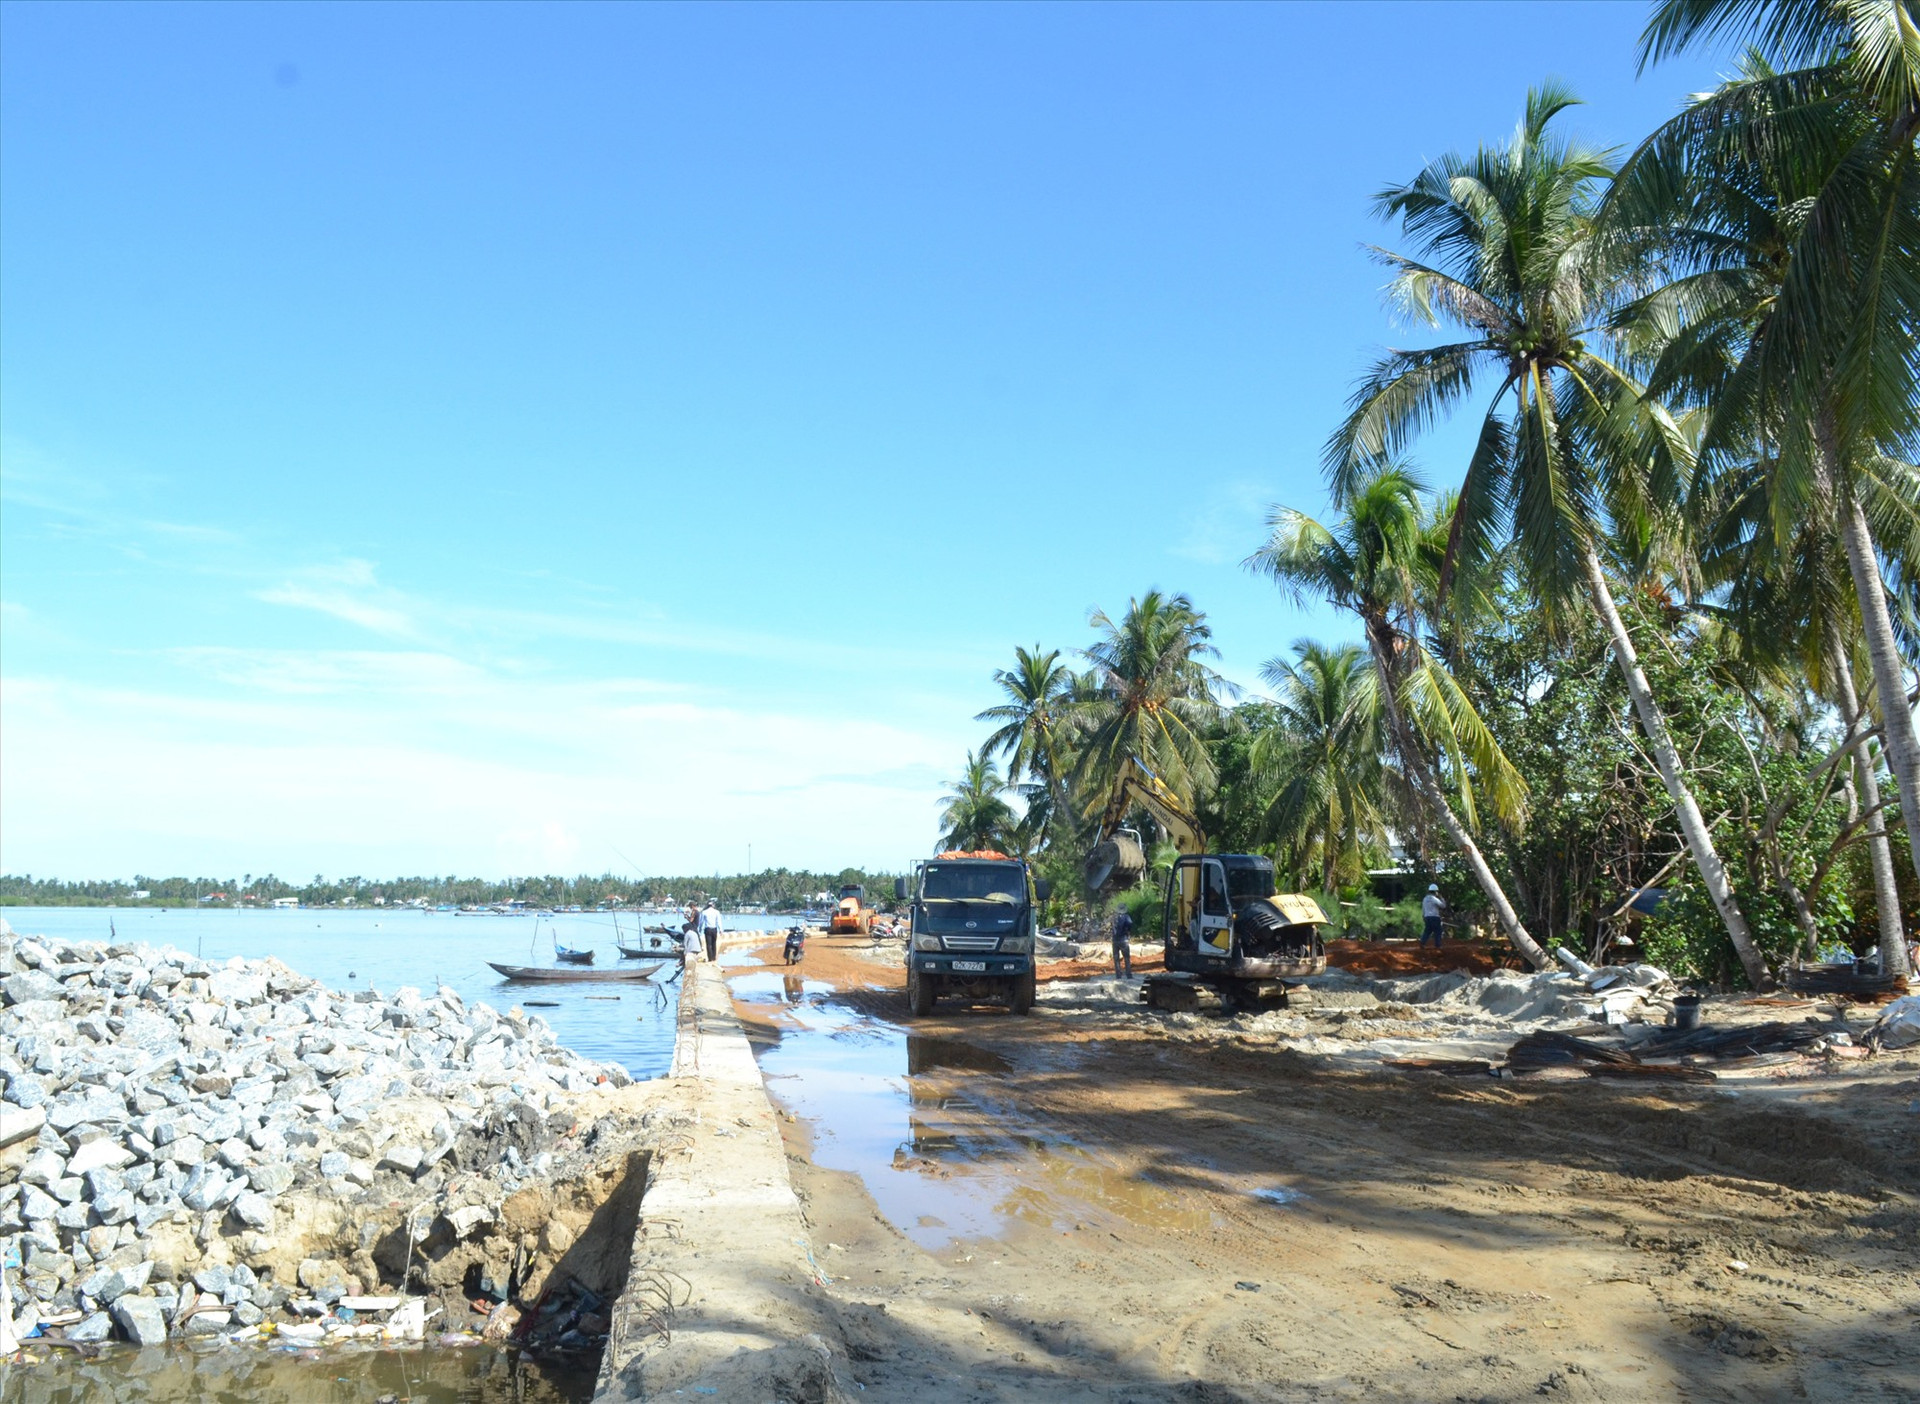 Giai đoạn 4 dự án chống xói lở khẩn cấp và bảo vệ bờ biển xã đảo Tam Hải sắp hoàn thành, đưa vào sử dụng. Ảnh: VIỆT NGUYỄN